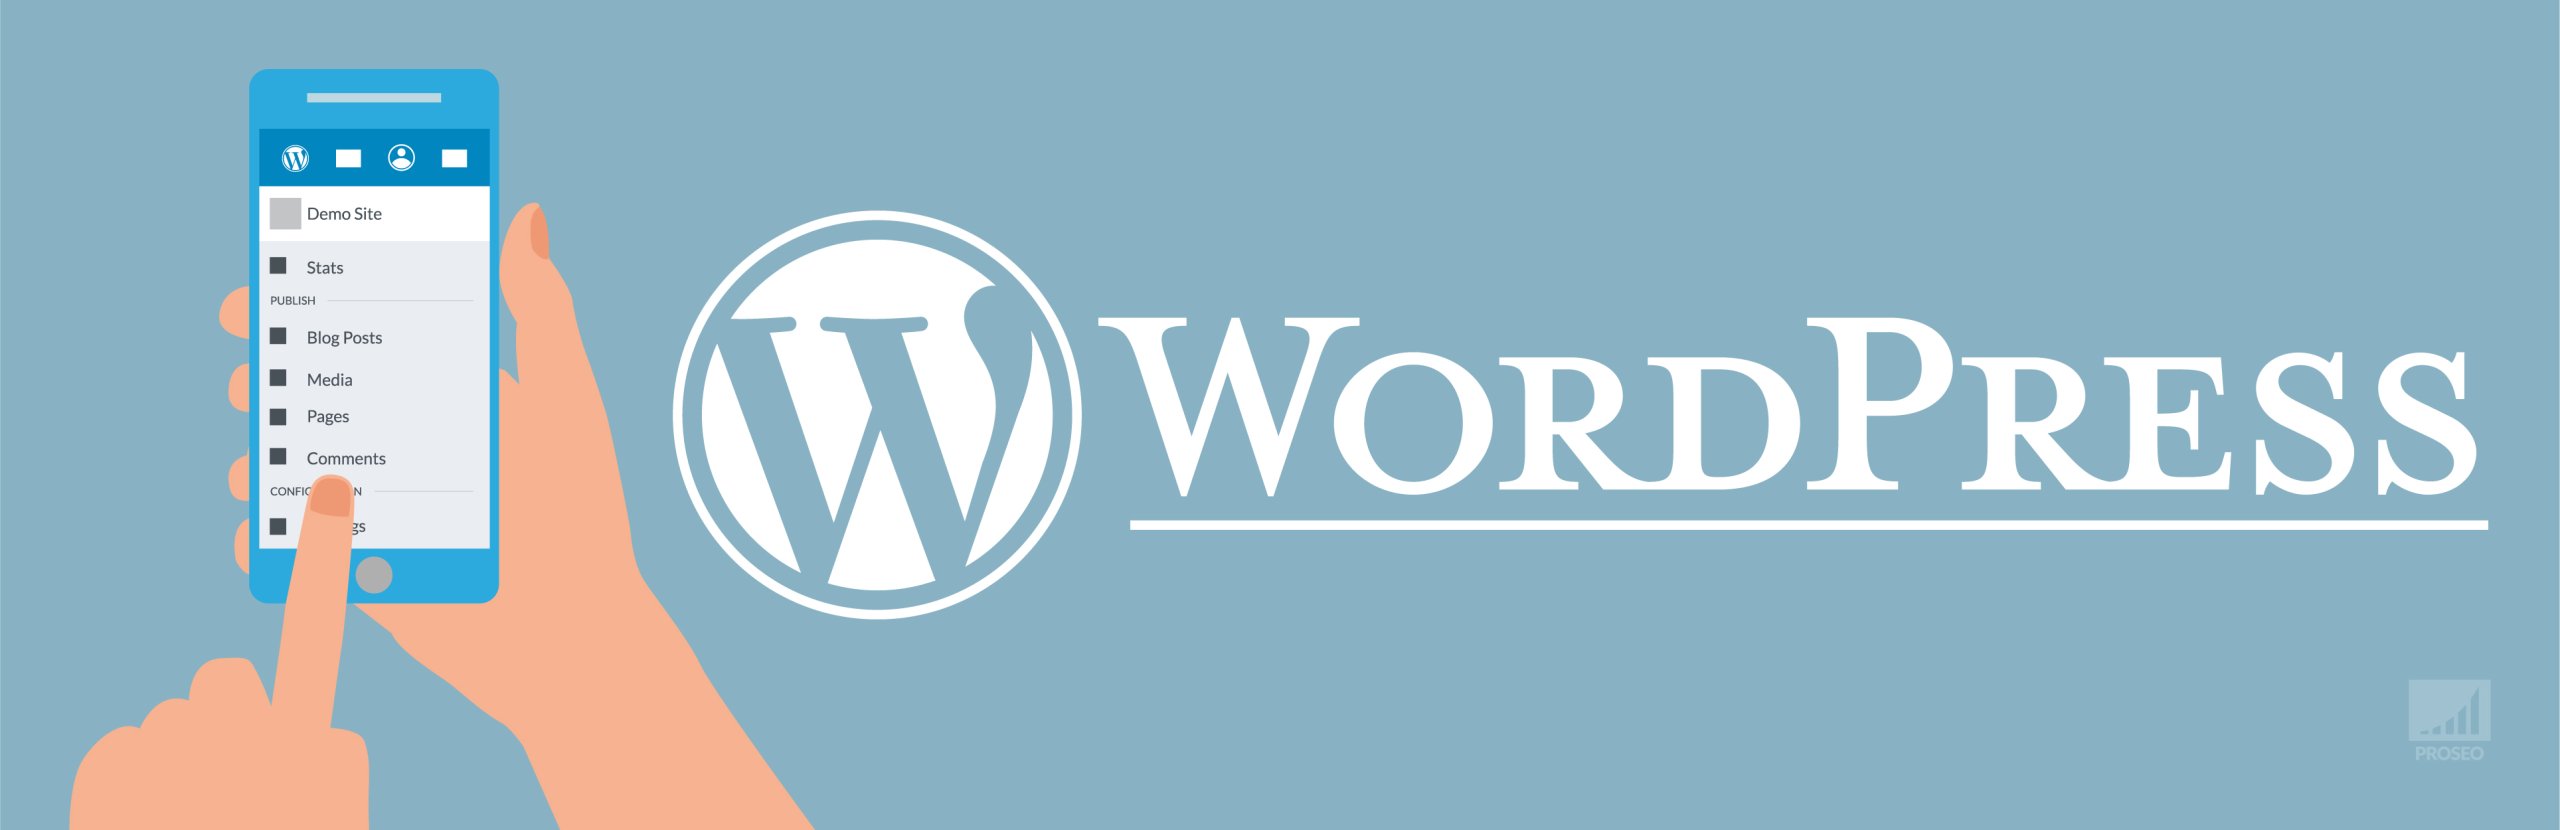 WordPress-site-instellingen-die-belangrijk-zijn-voor-SEO